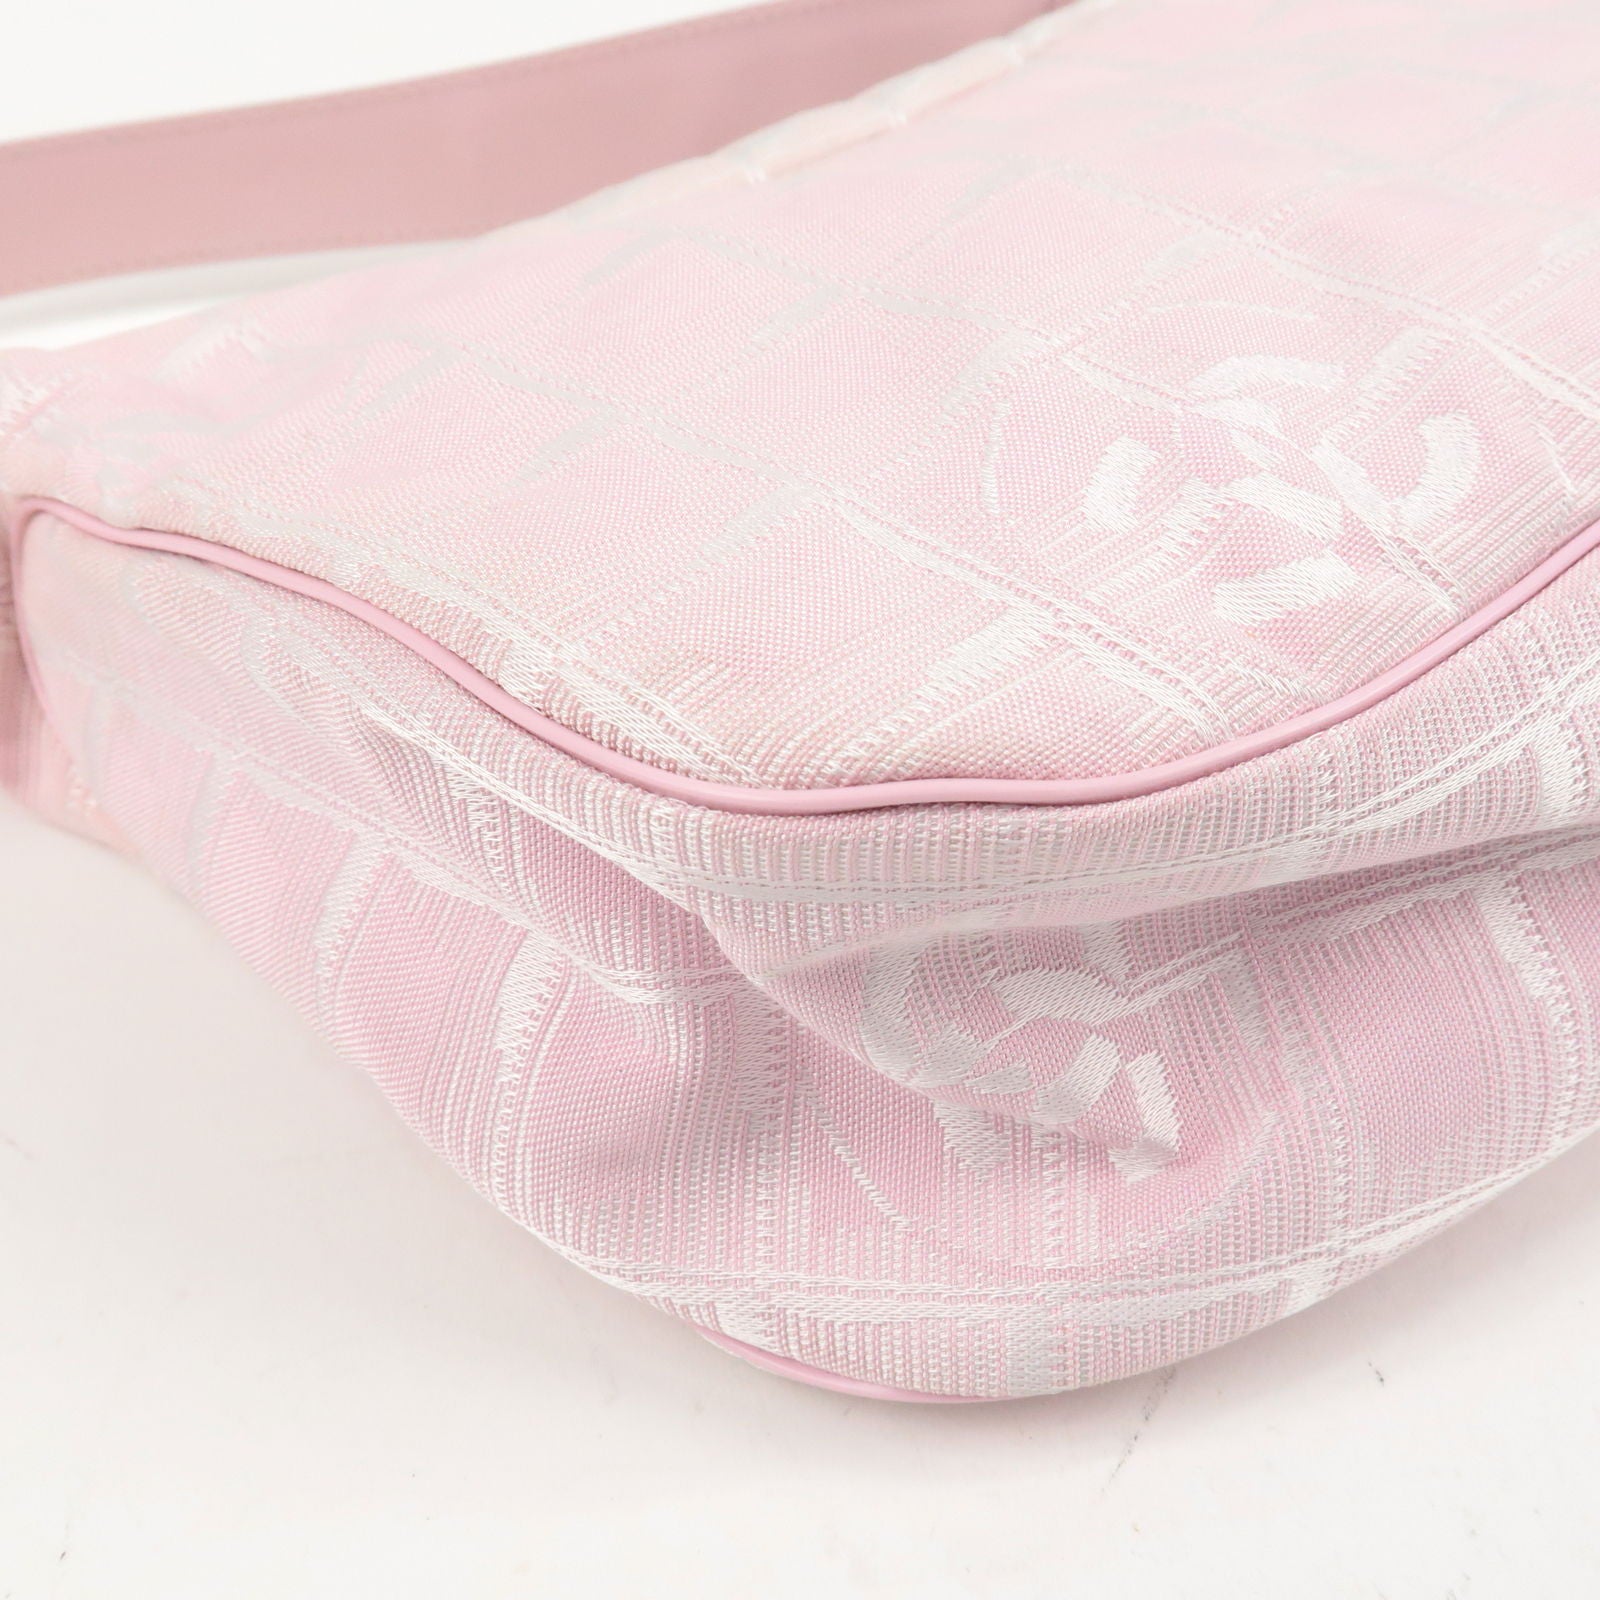 CHANEL-Travel-Line-Nylon-Jacquard-Leather-Shoulder-Bag-Pink-A20516